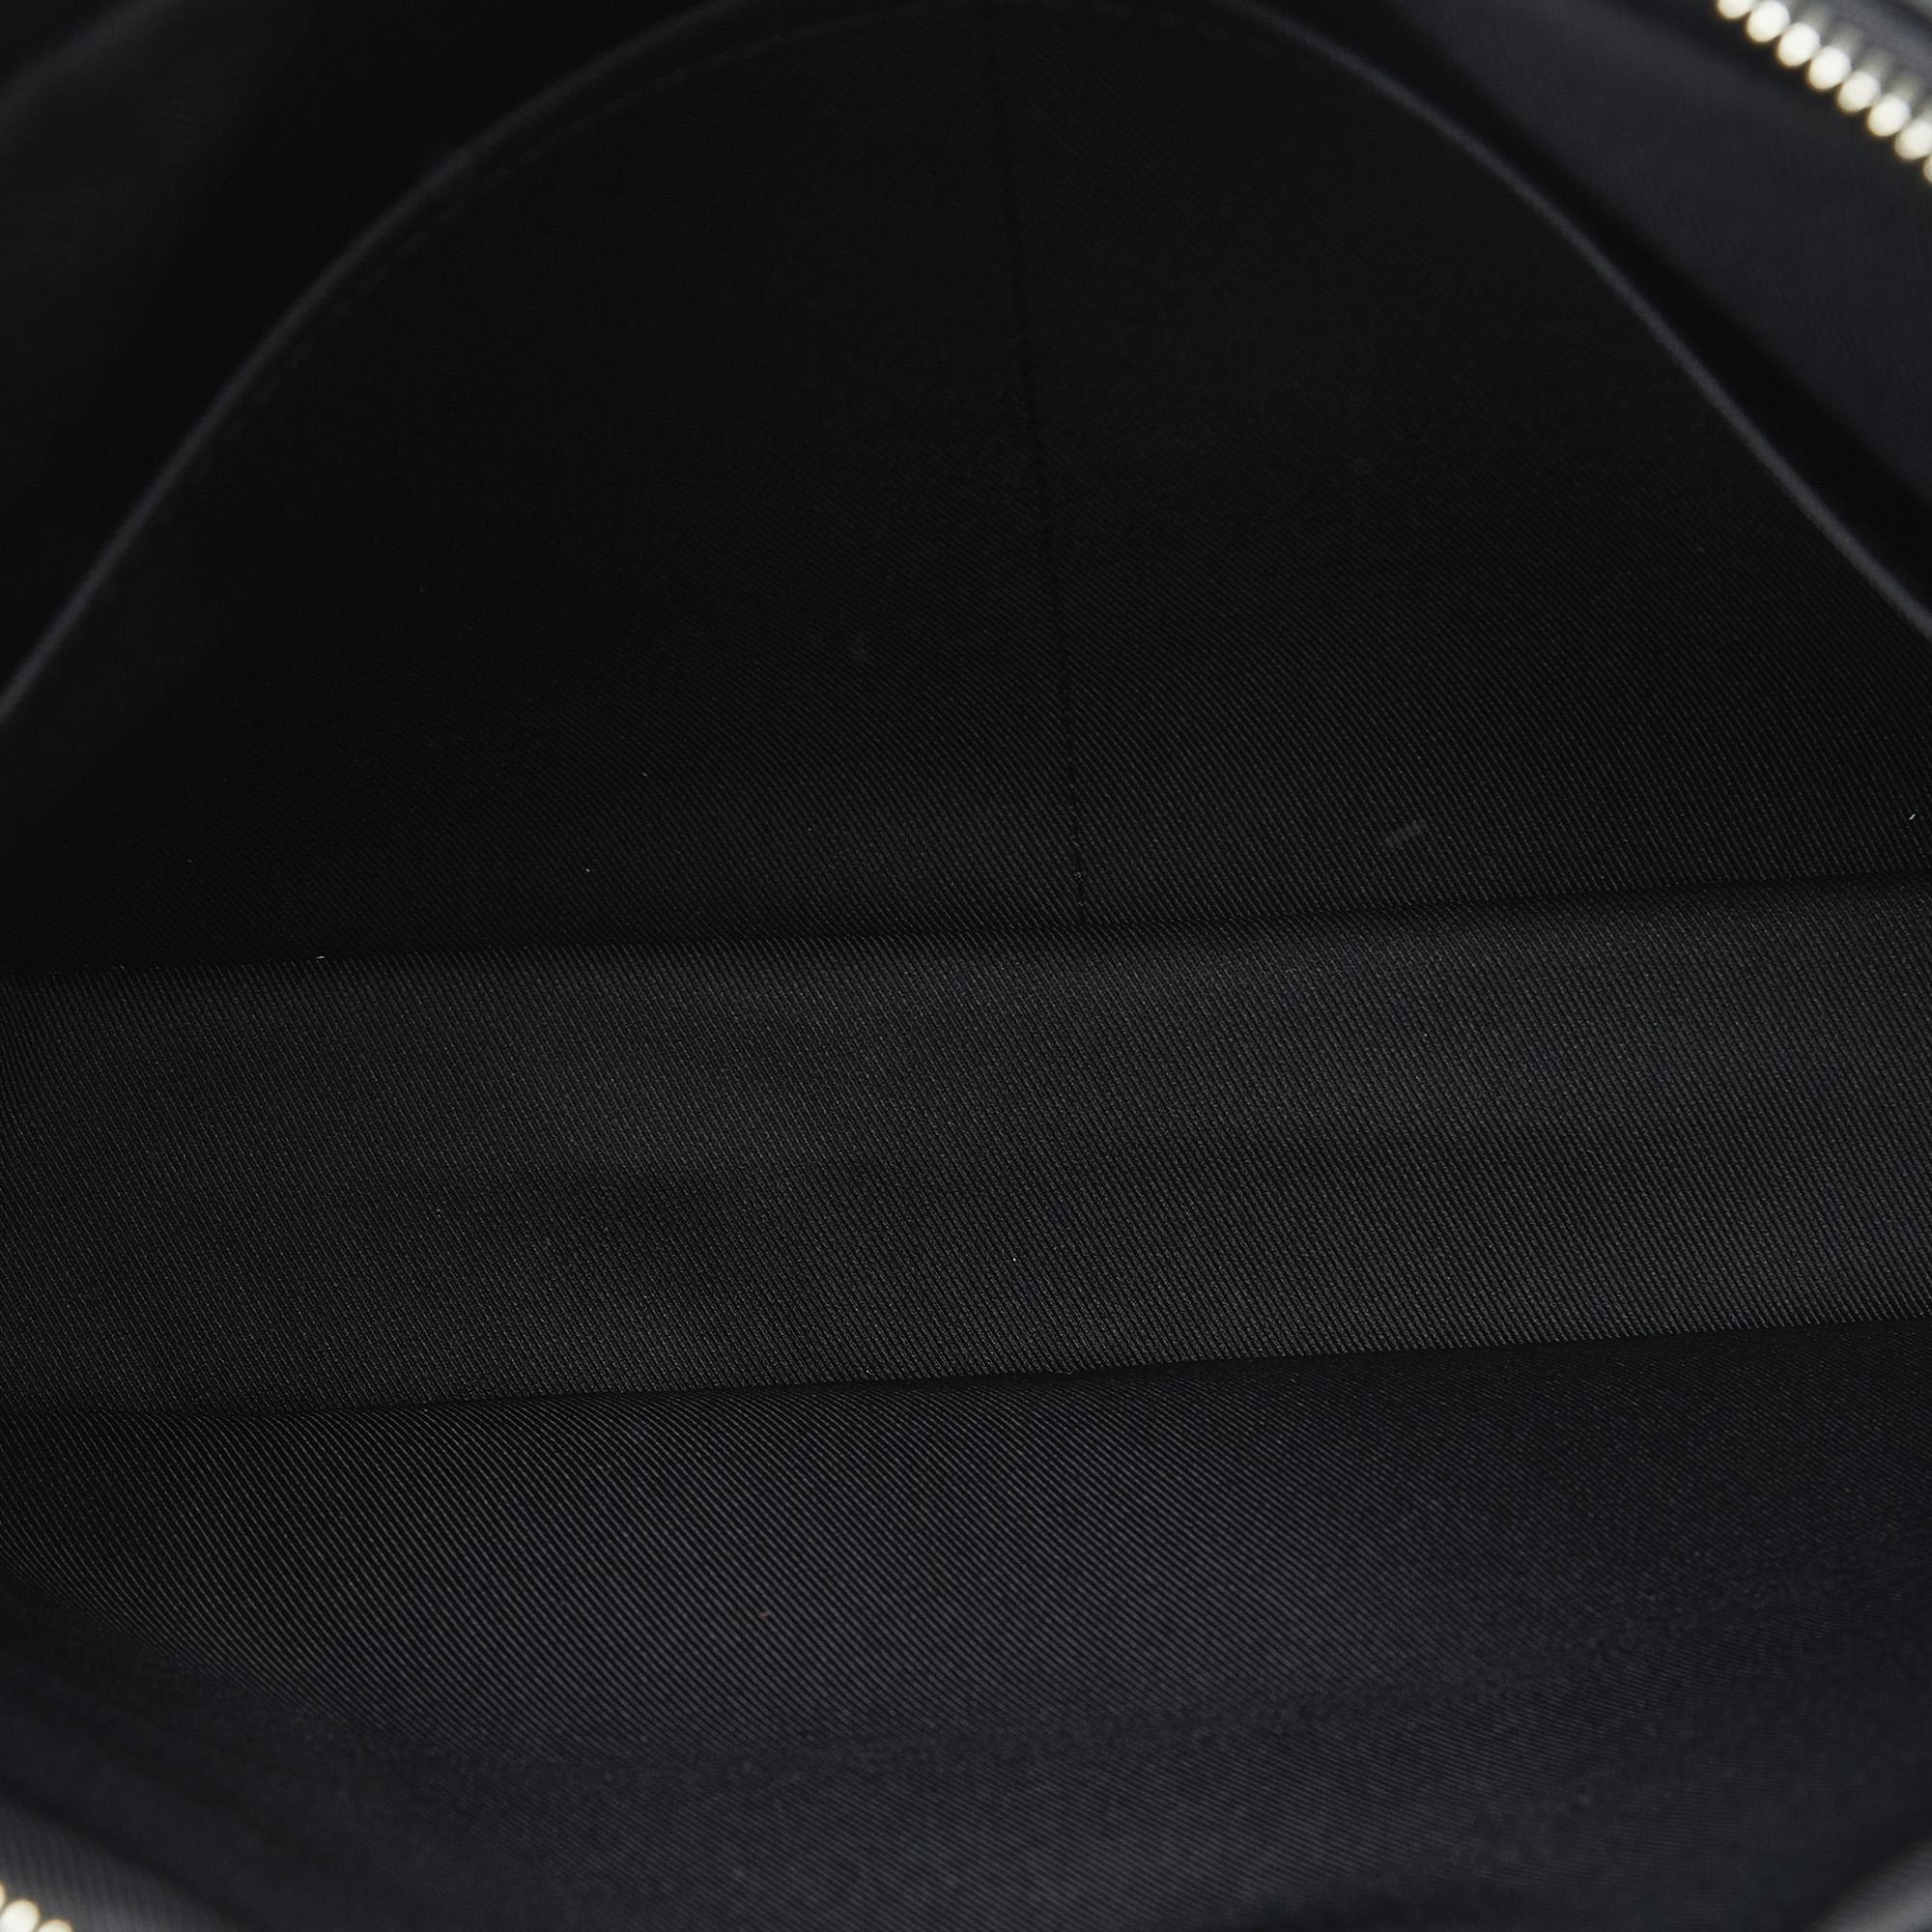 Louis Vuitton Black Damier Graphite Trocadero MM